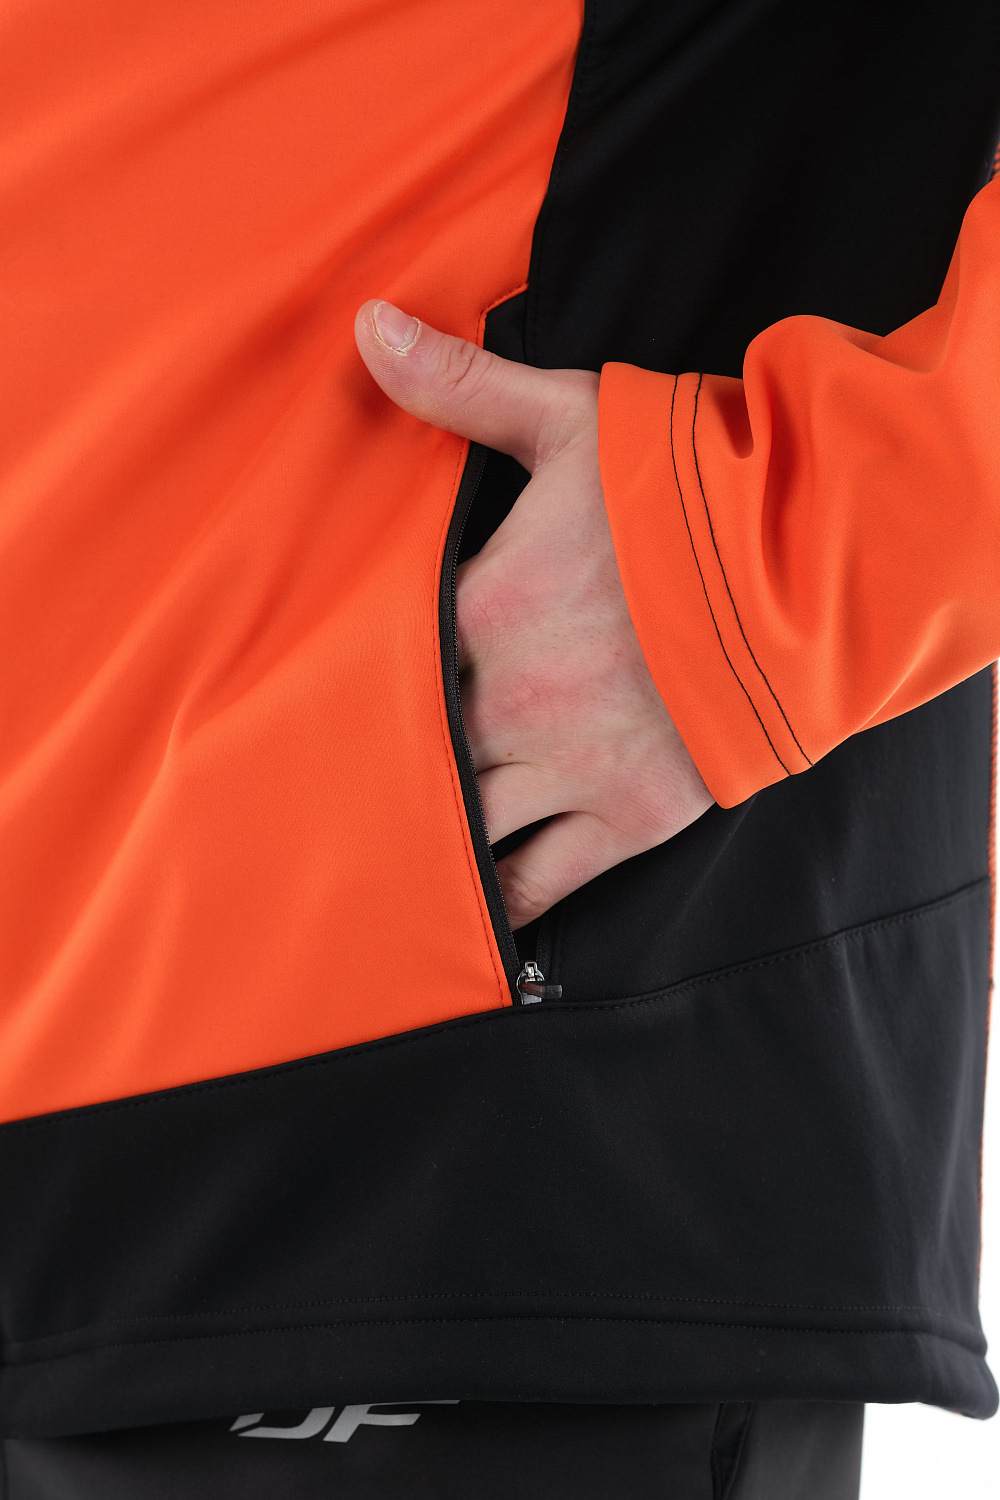 Куртка Explorer Black-Orange мужская, Softshell в интернет-магазине Мотомода